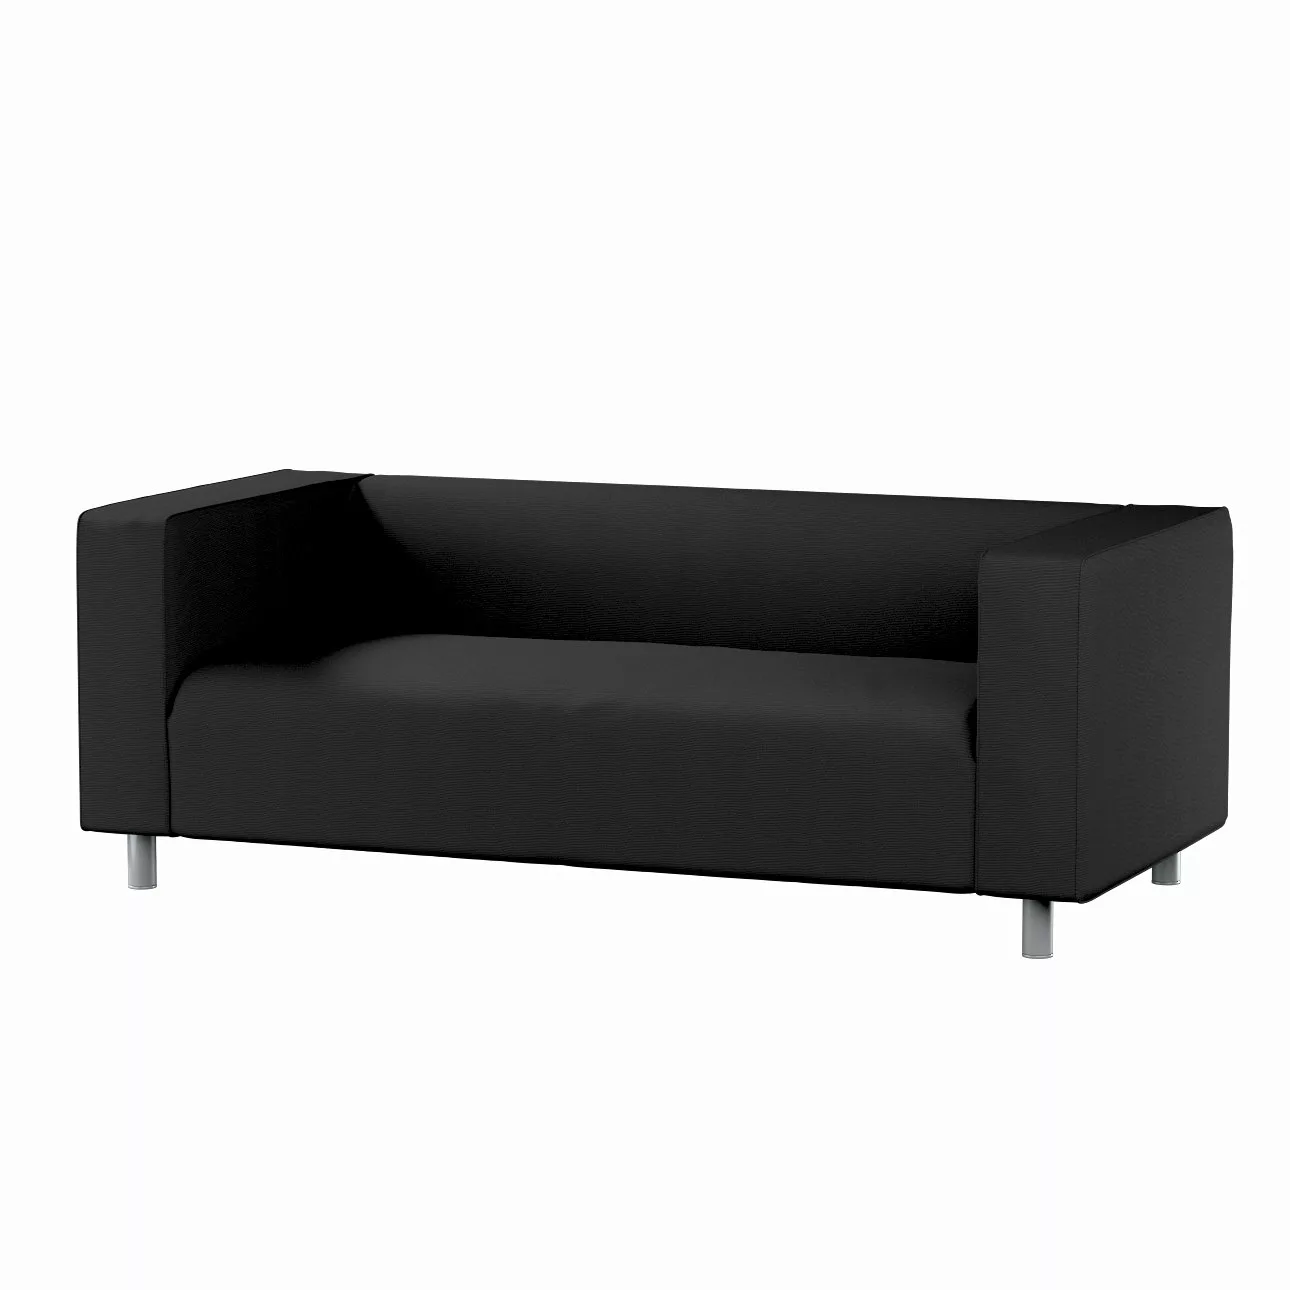 Bezug für Klippan 2-Sitzer Sofa, schwarz, Sofahusse, Klippan 2-Sitzer, Etna günstig online kaufen